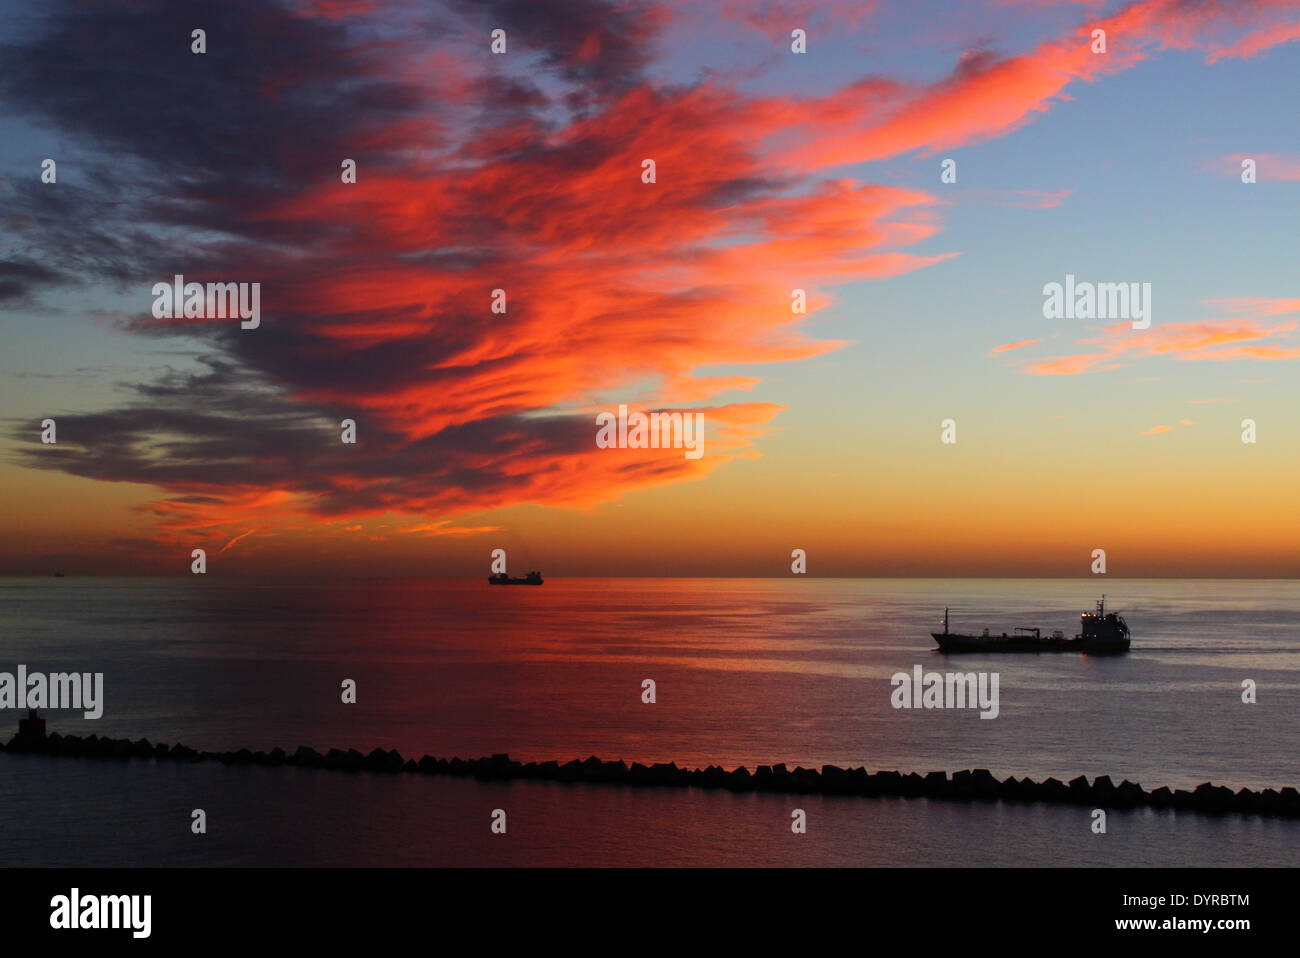 Amanecer en el puerto de Las Palmas de Gran Canaria, España, con el espectacular cielo, nubes rojas y tres naves en perspectiva Foto de stock